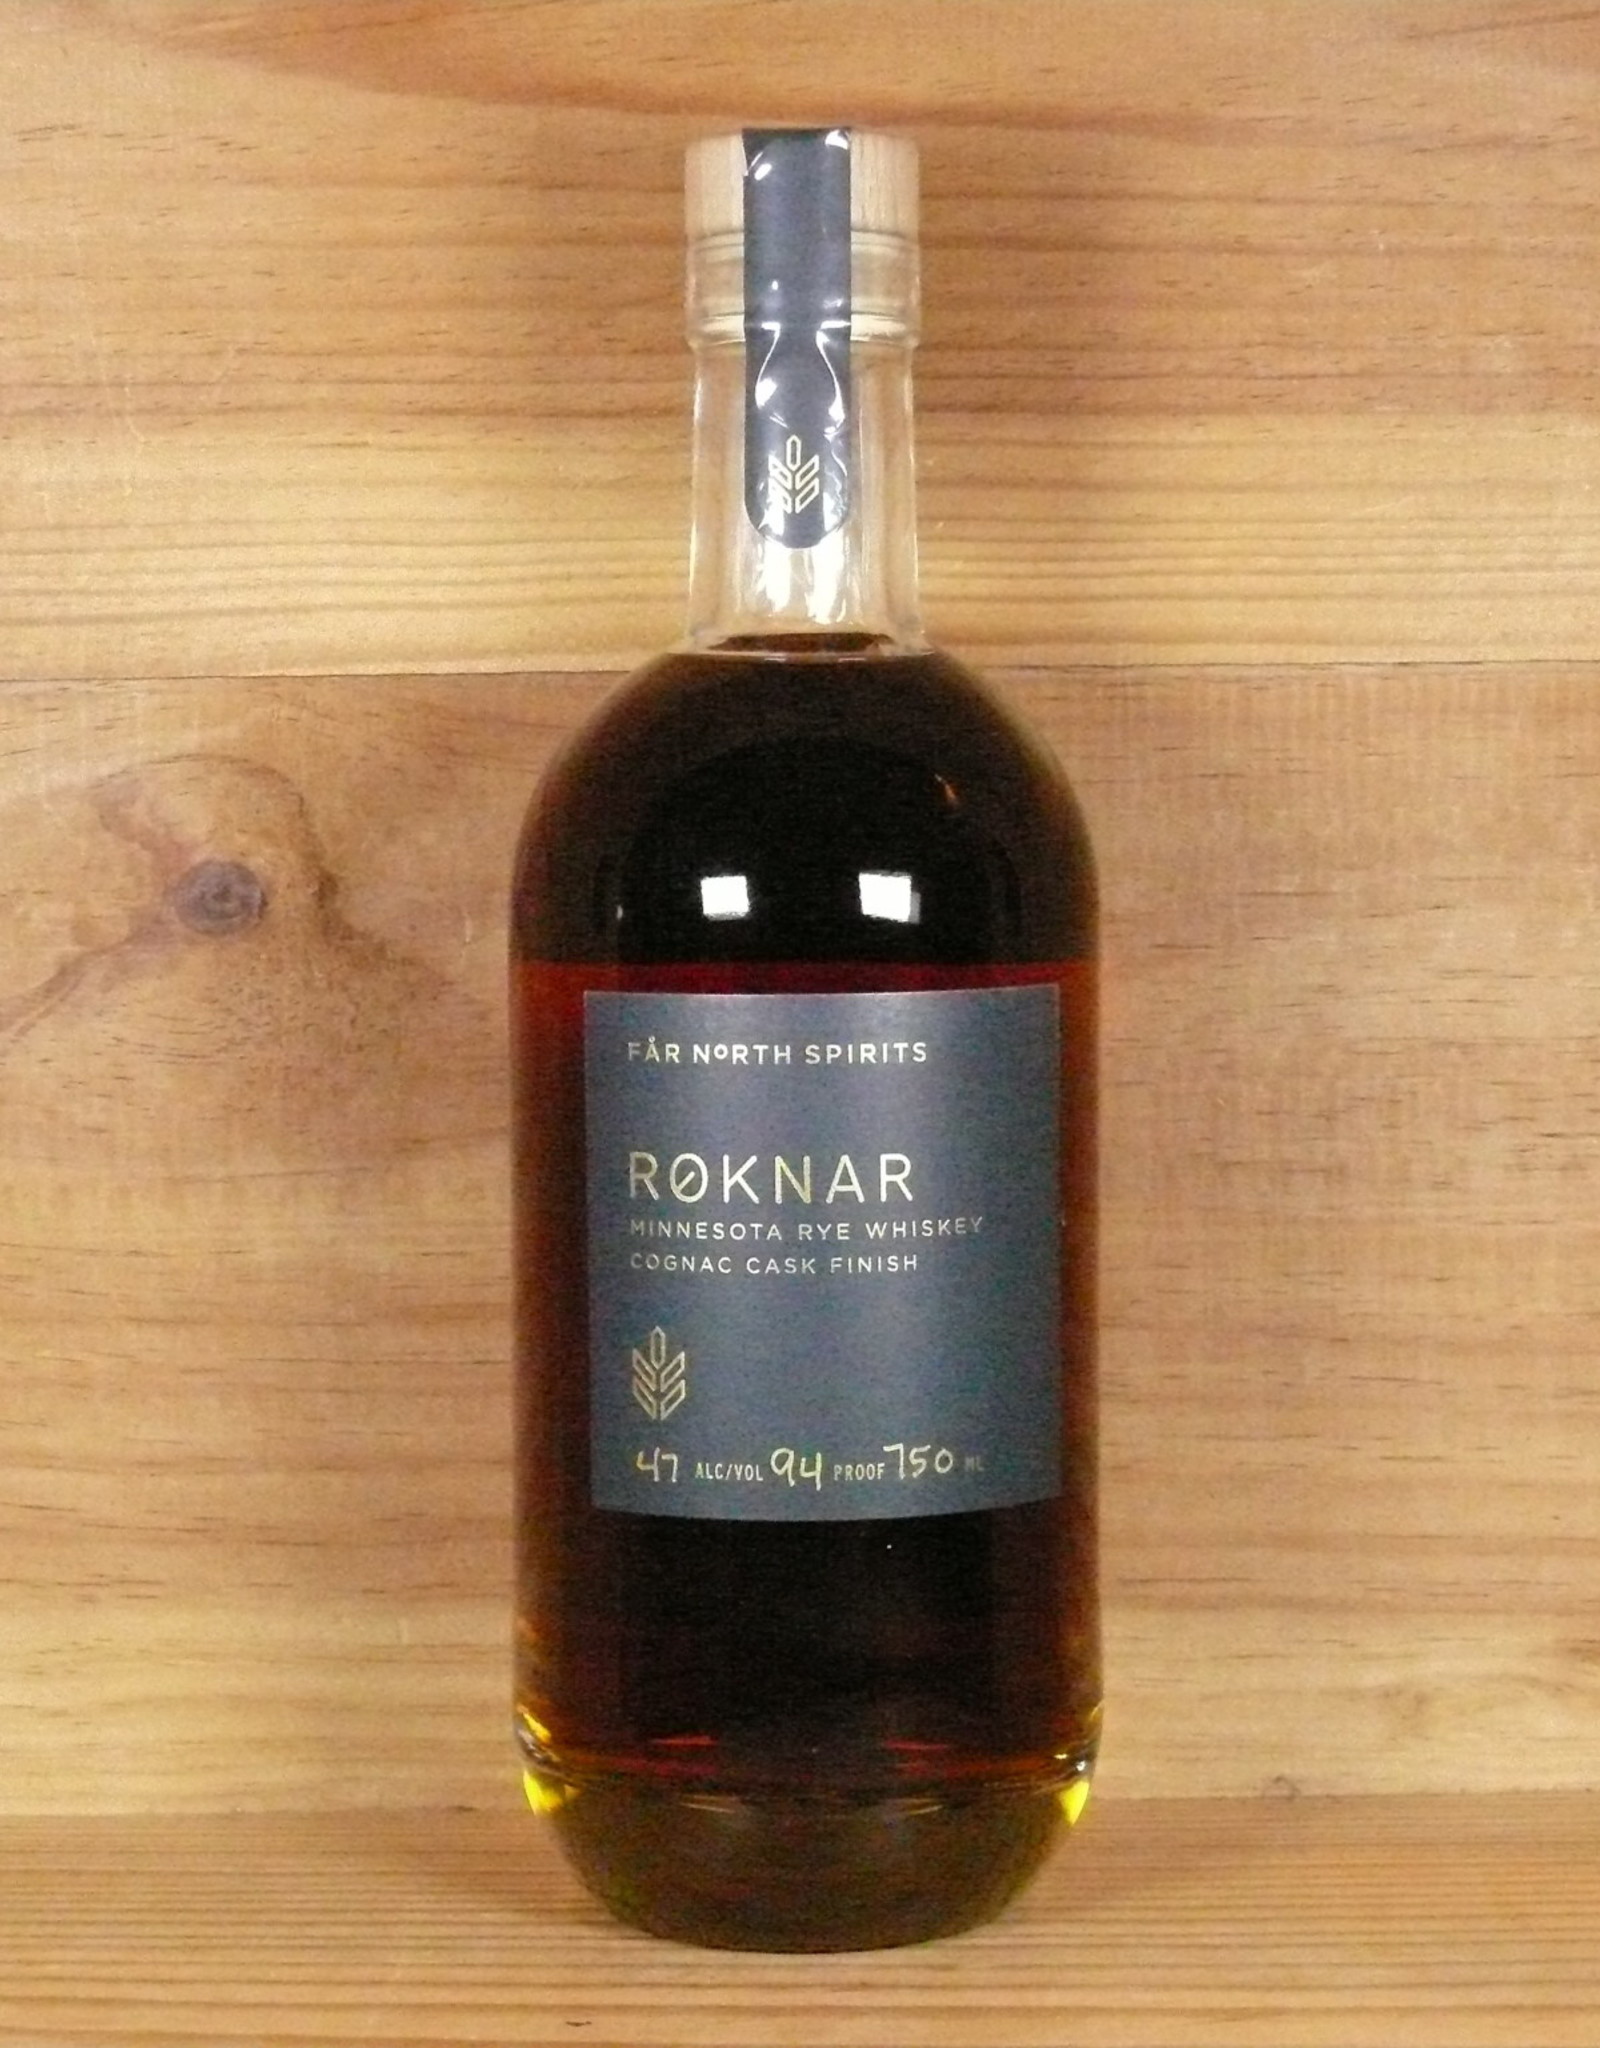 Far North Spirits "Roknar Rye Whiskey"